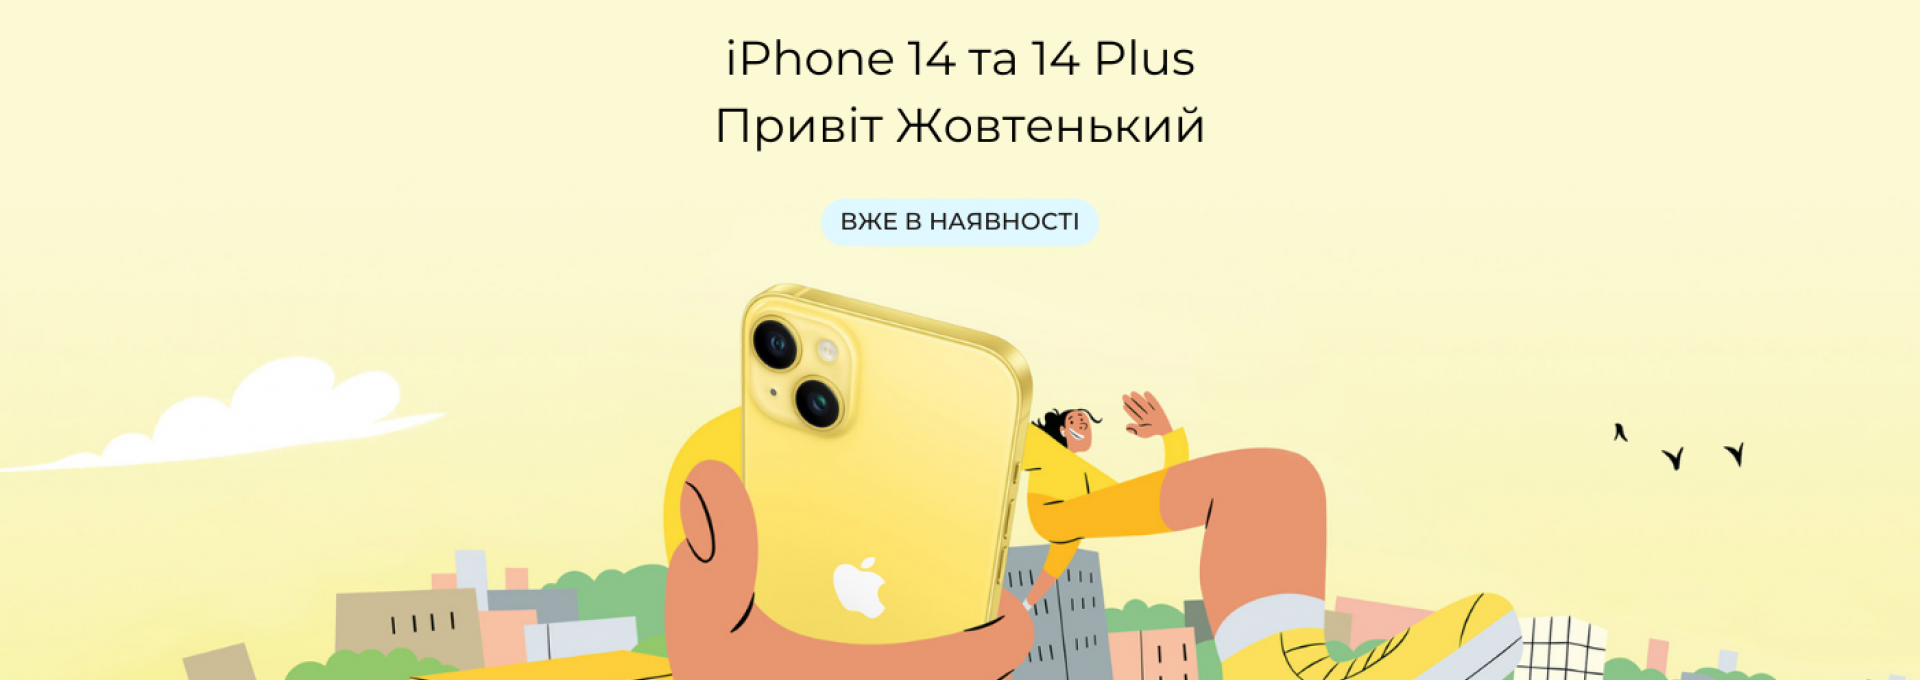 iPhone 14 yellow